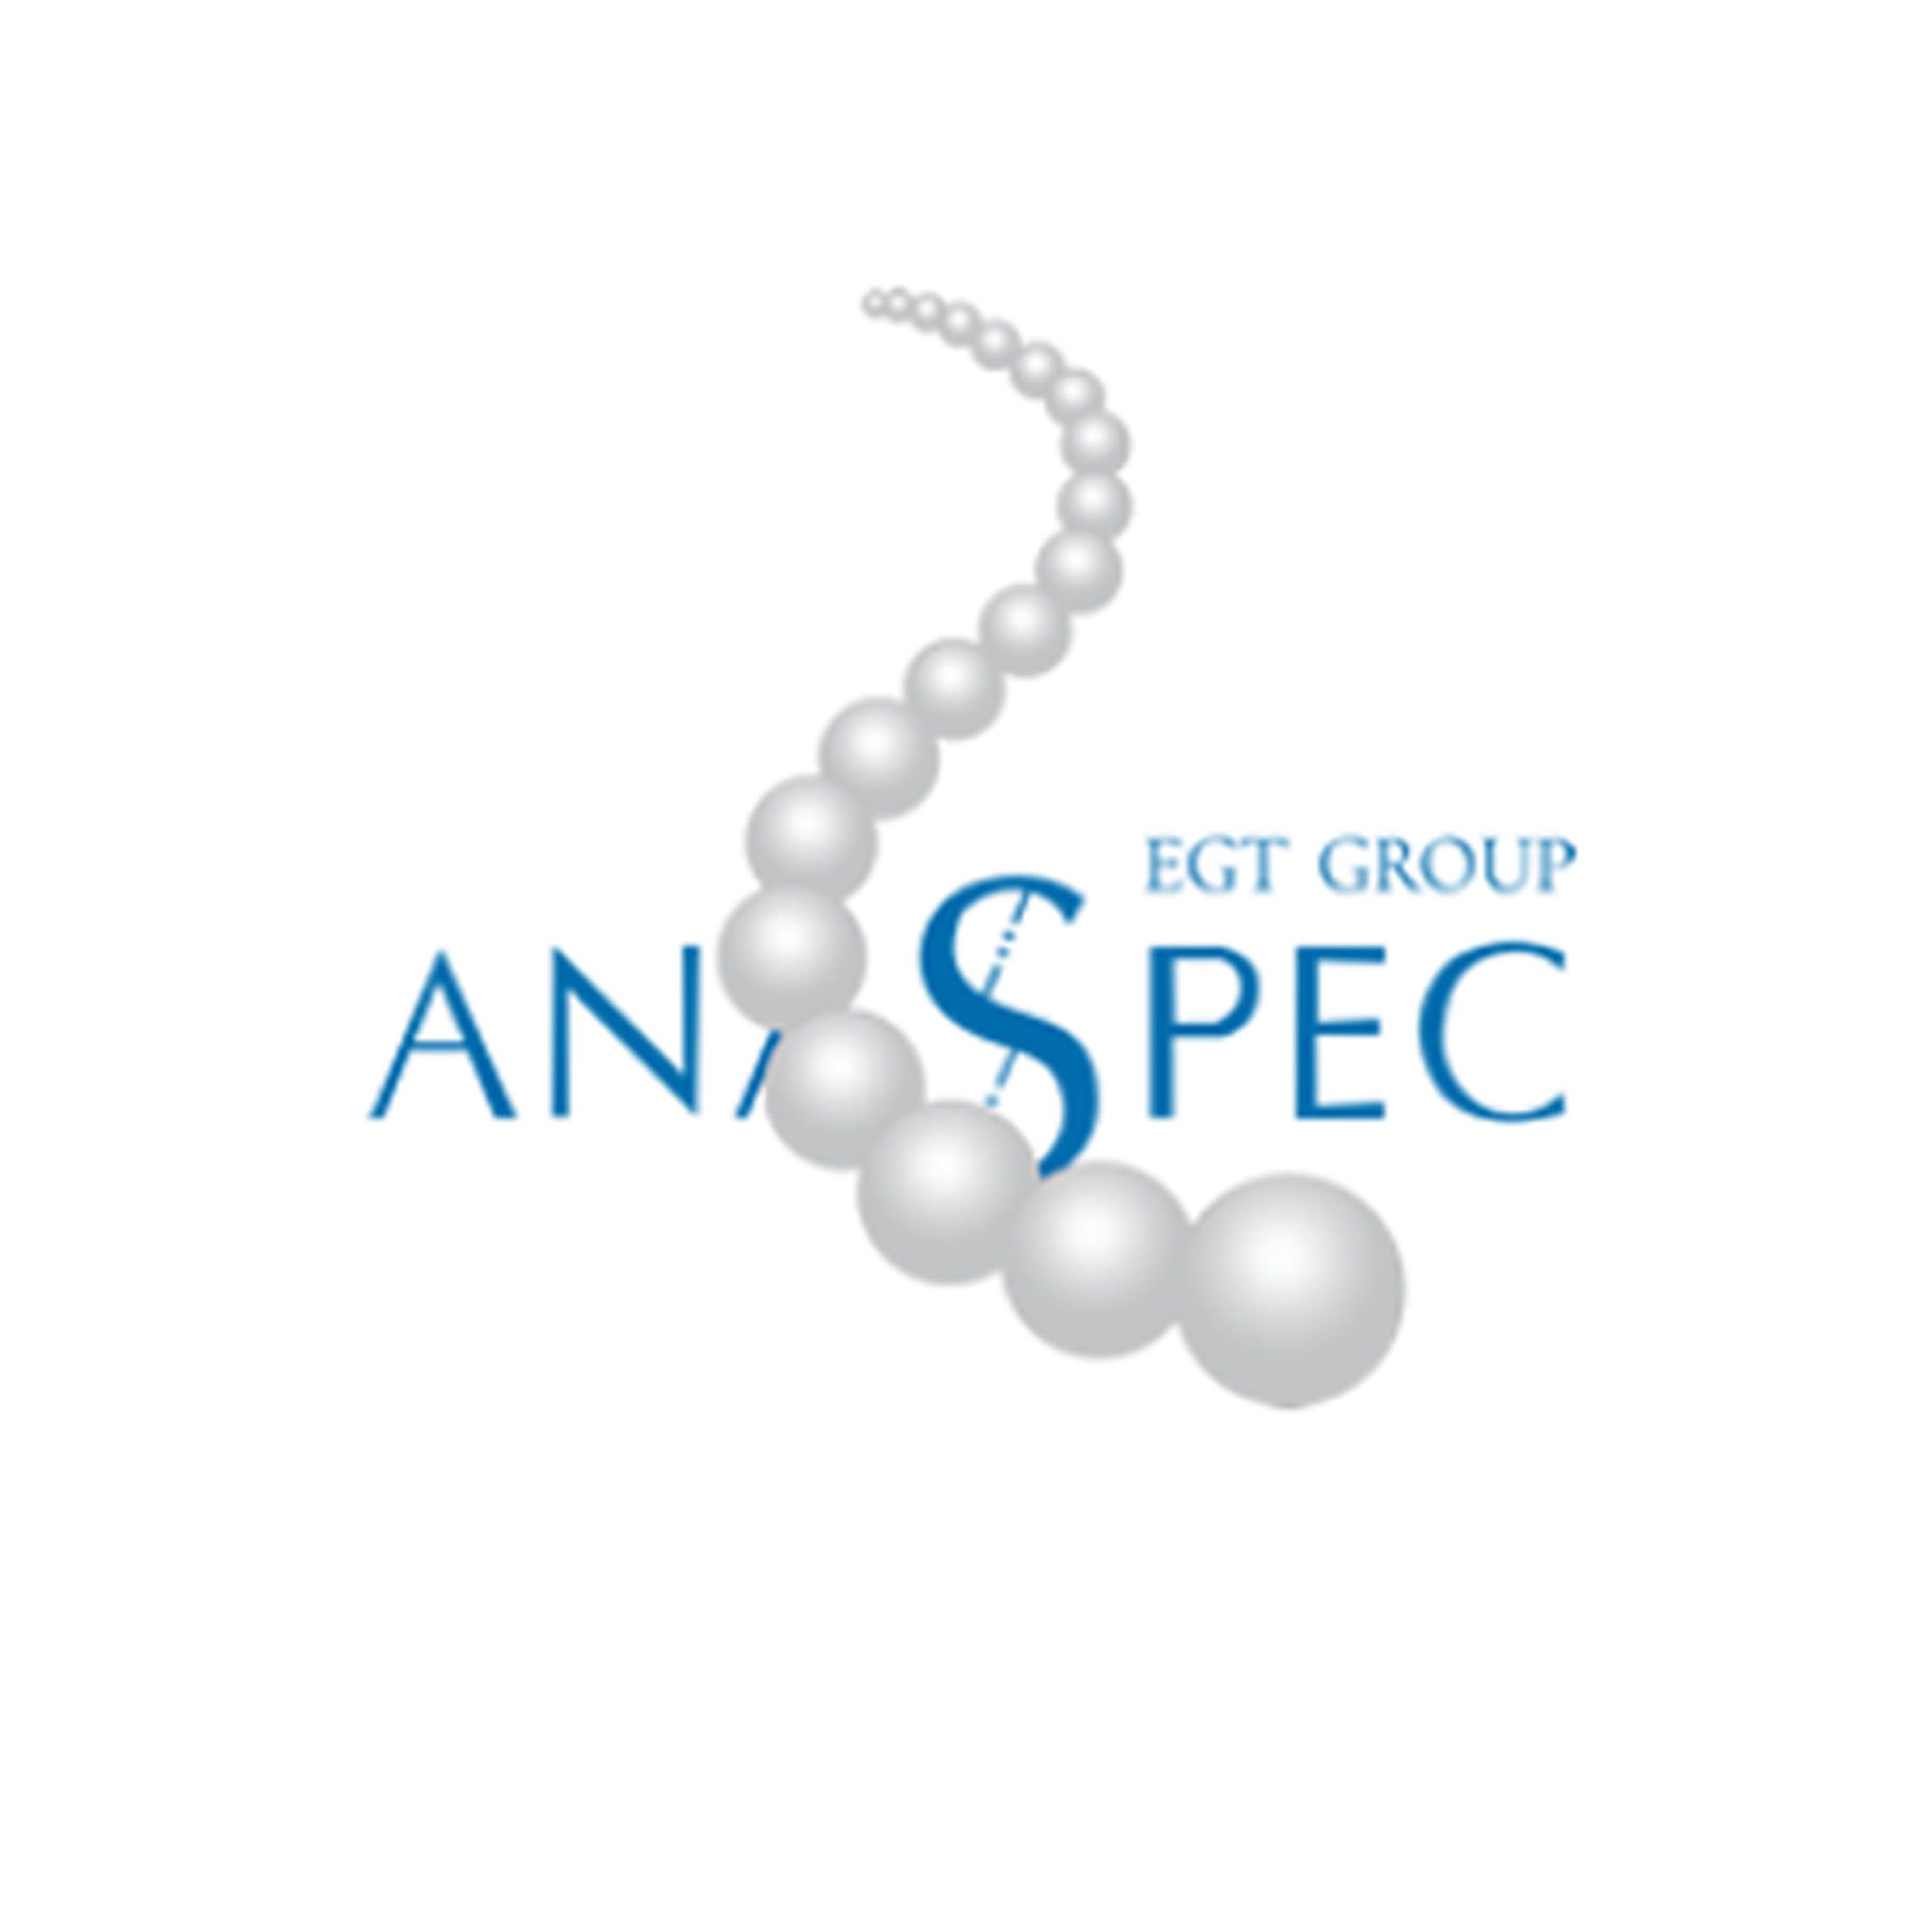 AnaSpec 专业多肽，检测试剂，抗体检测试剂盒